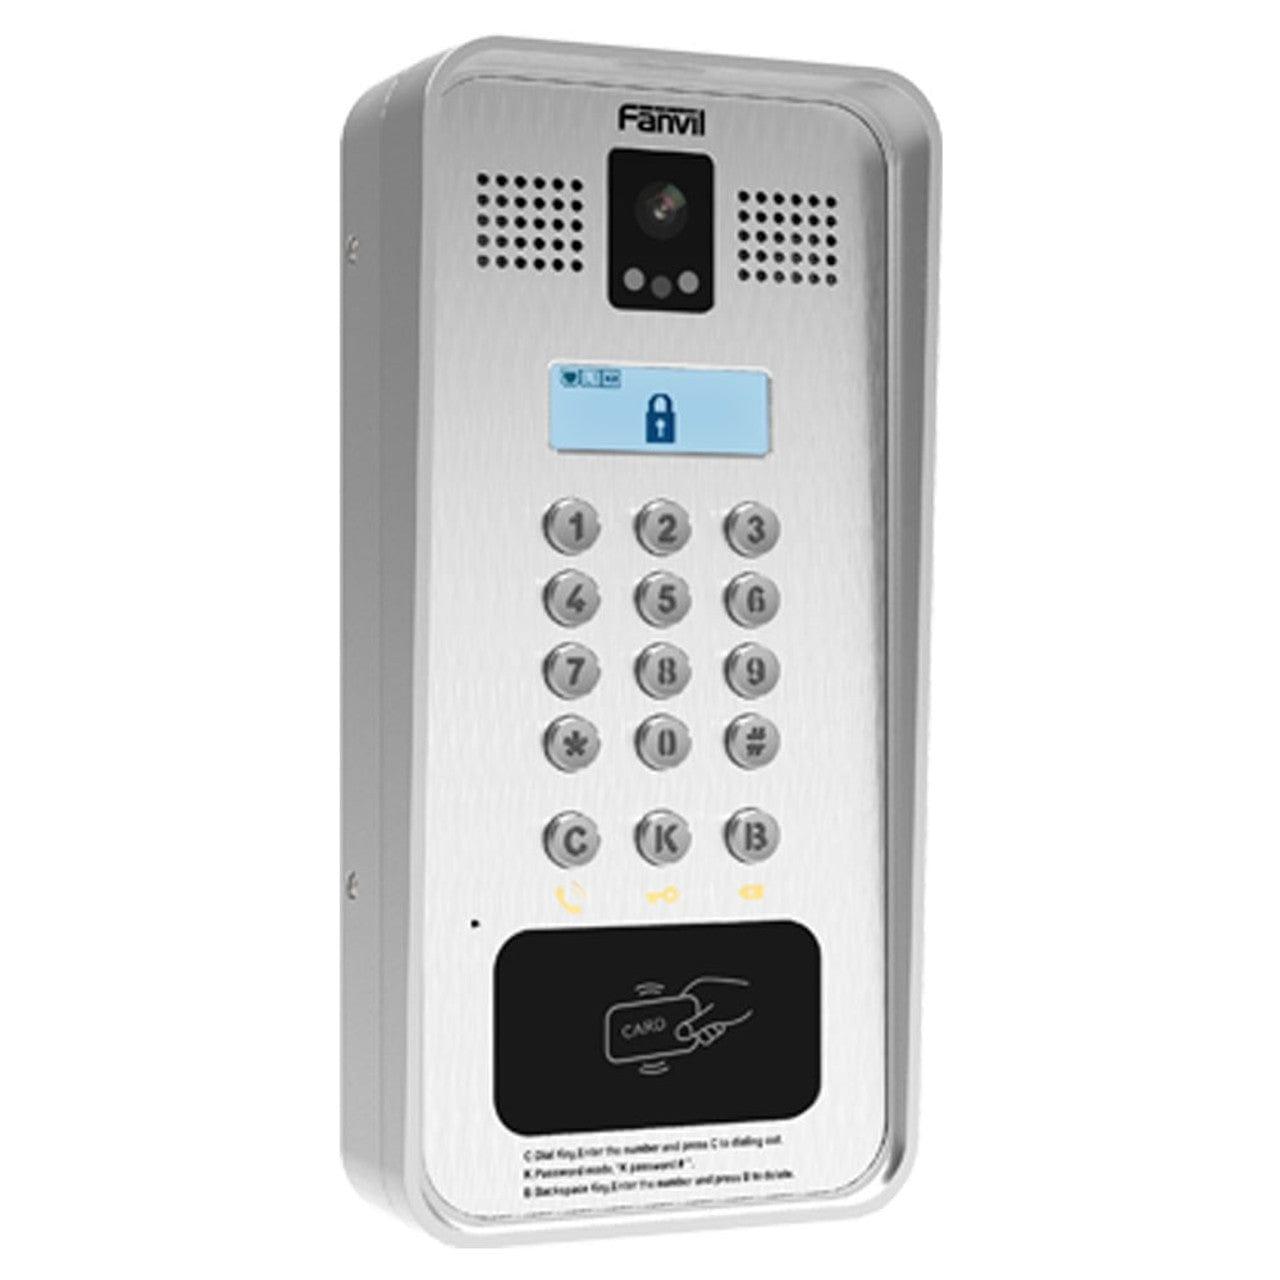 Fanvil I33V All-in-One Doorphone (Access Control, Intercom and Broadcasting) - FANVIL-I33V - New - FANVIL-I33V - Reef Telecom